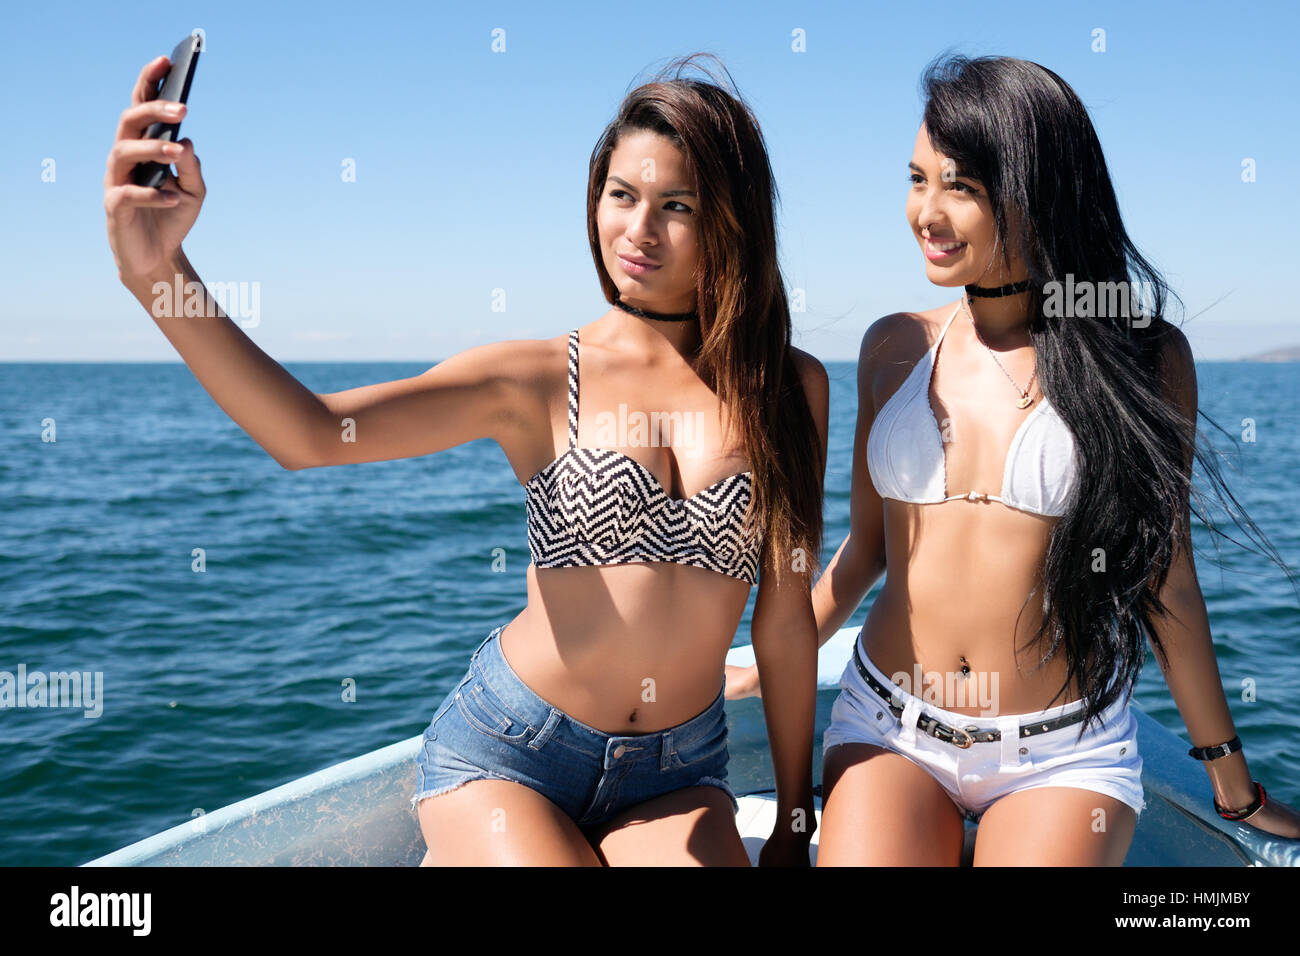 Zwei sehr attraktiven jungen hispanischen Frauen fotografieren Handy Selfie auf einem Boot Stockfoto